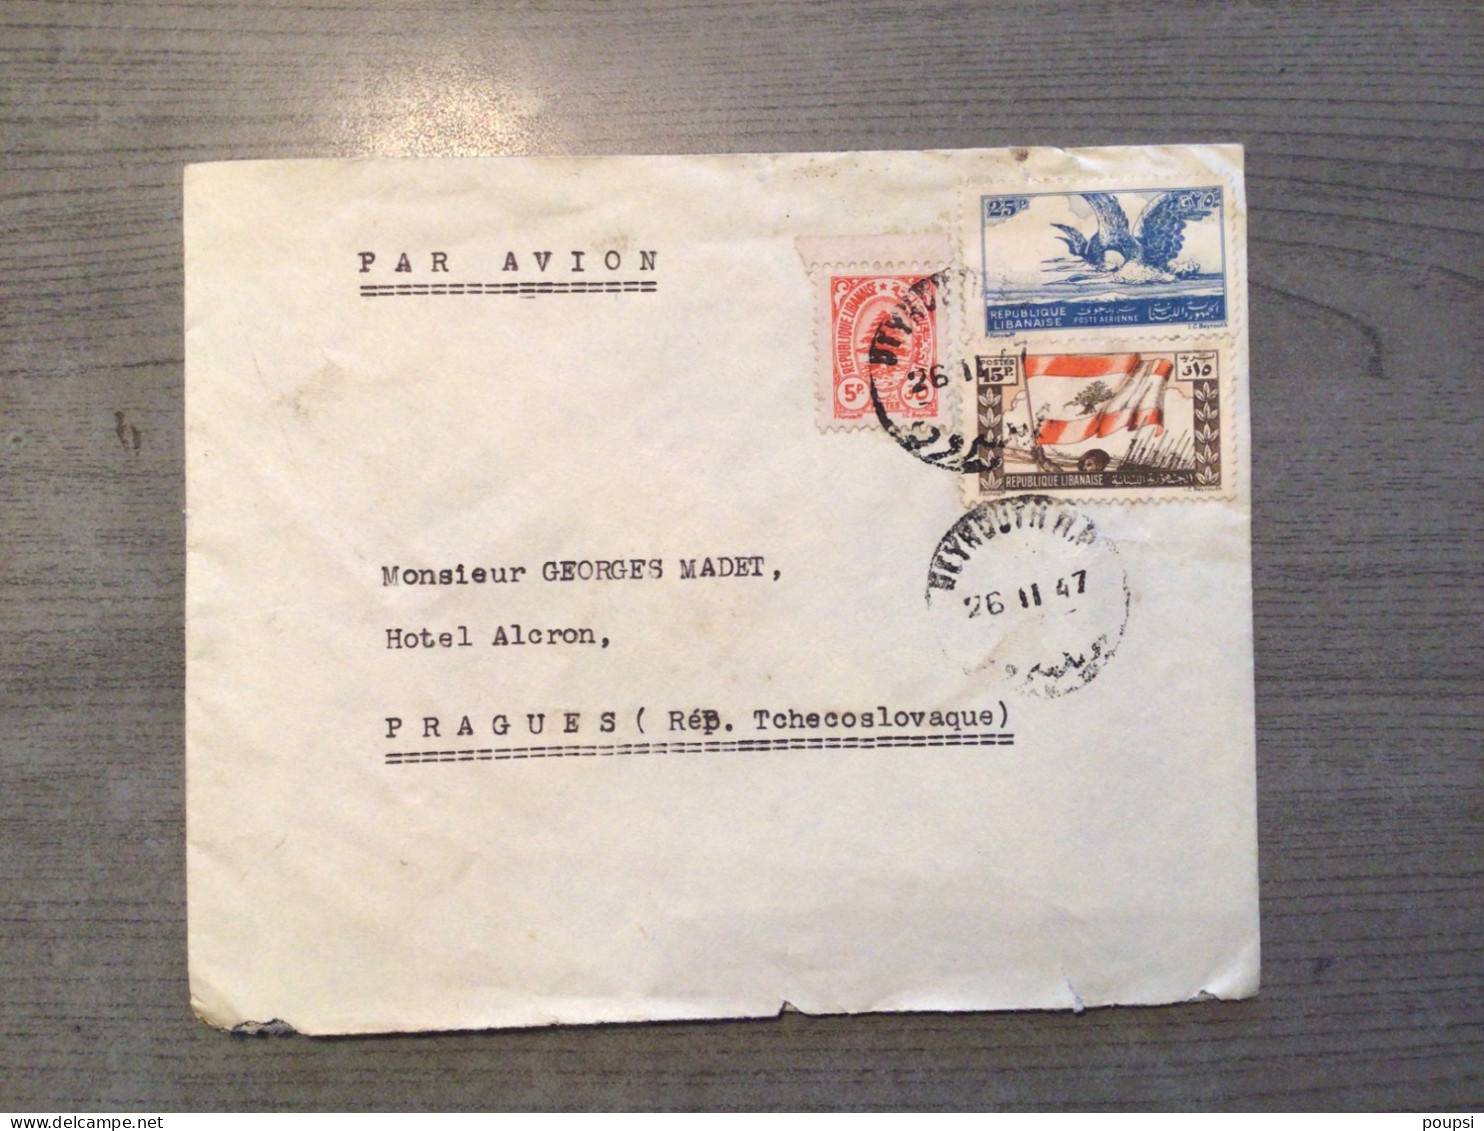 Lettre Par Avion BEYROUTH - LIBAN Pour PRAGUE - 1947 - Lebanon